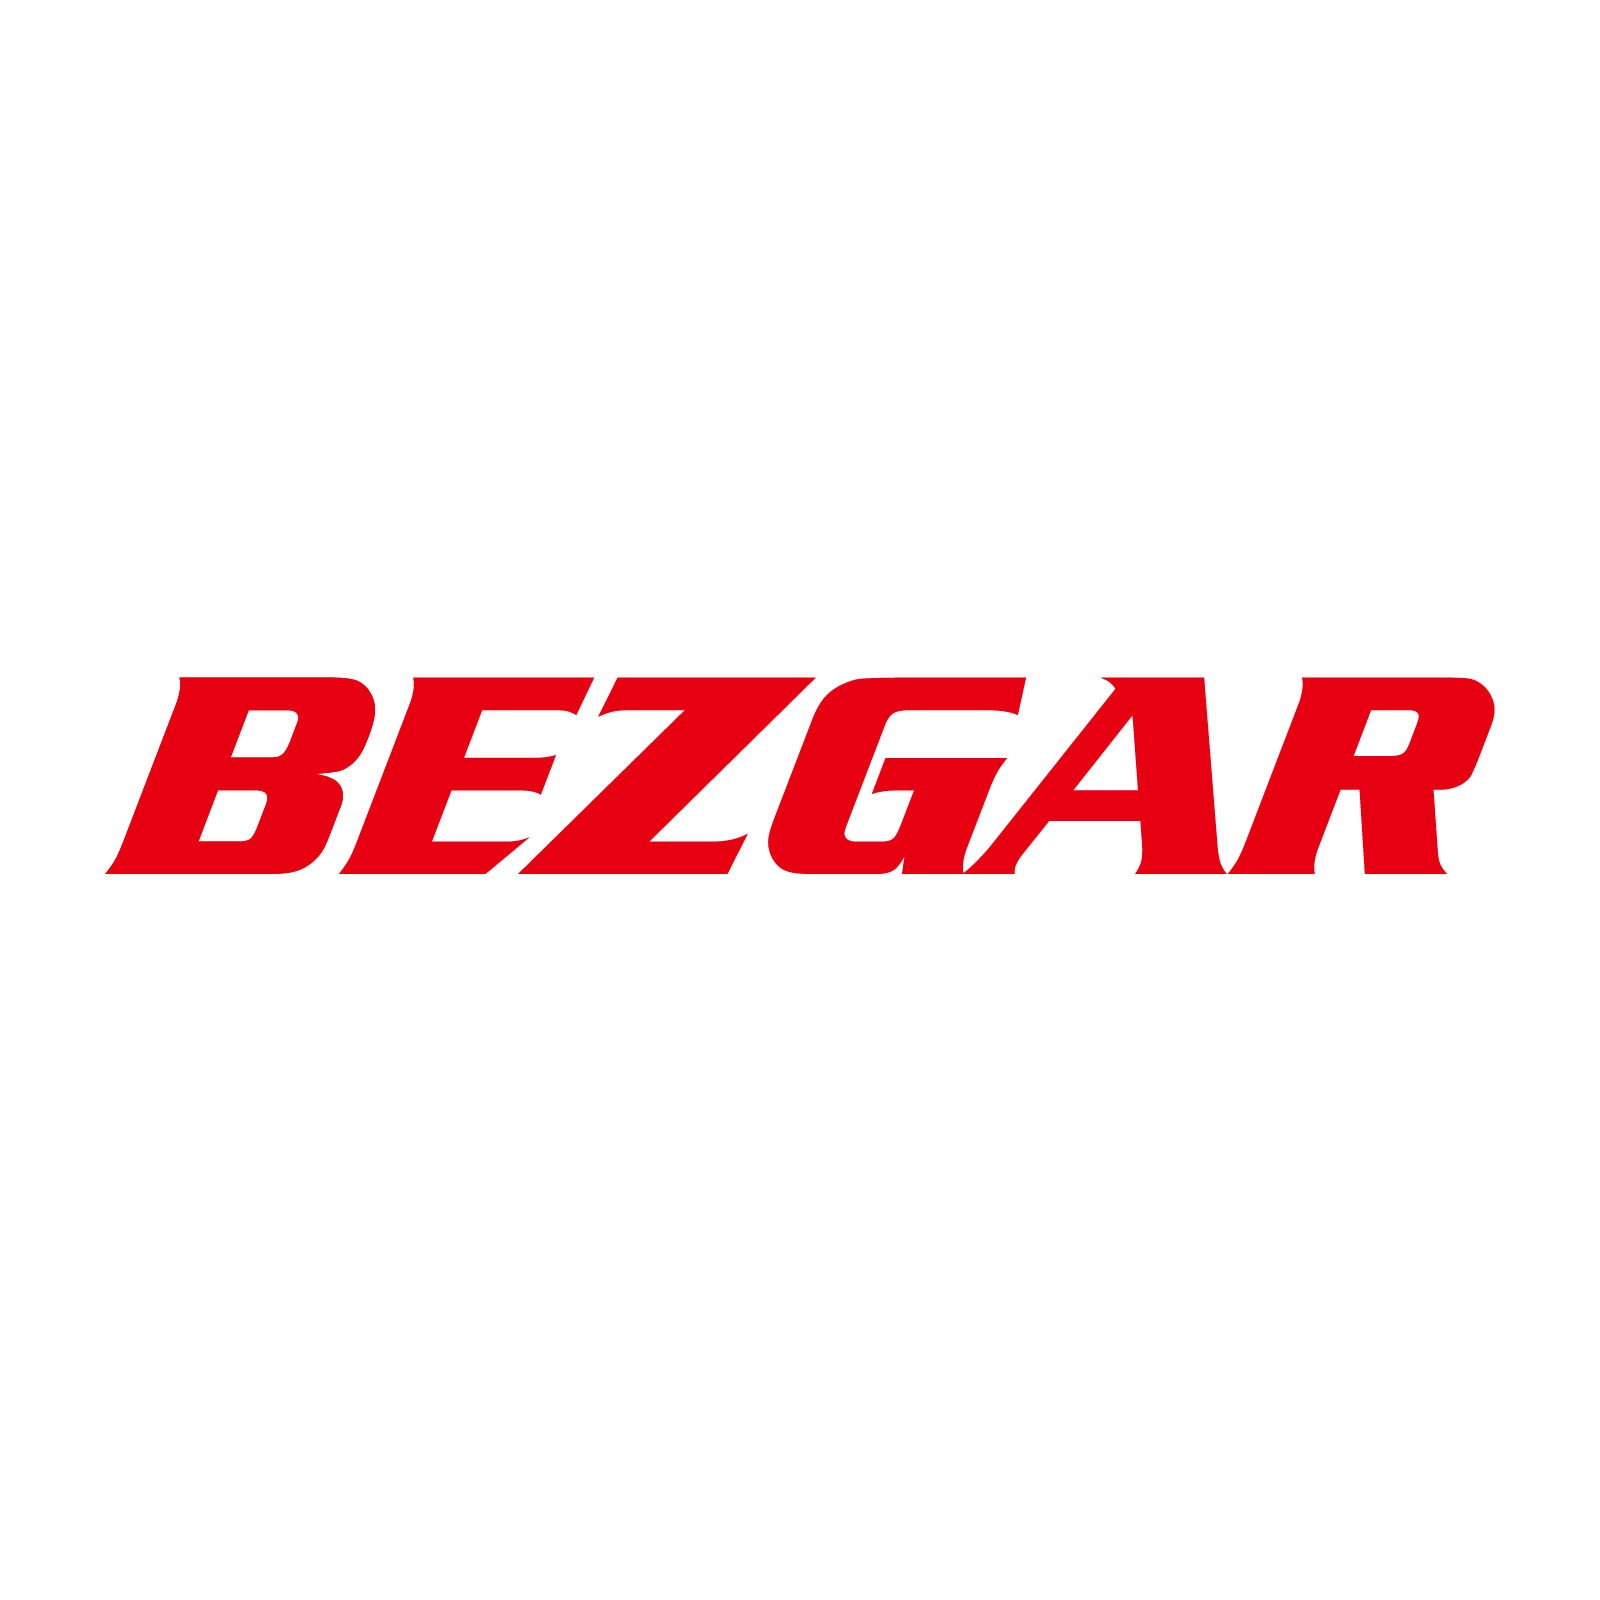 BEZGAR Coupons